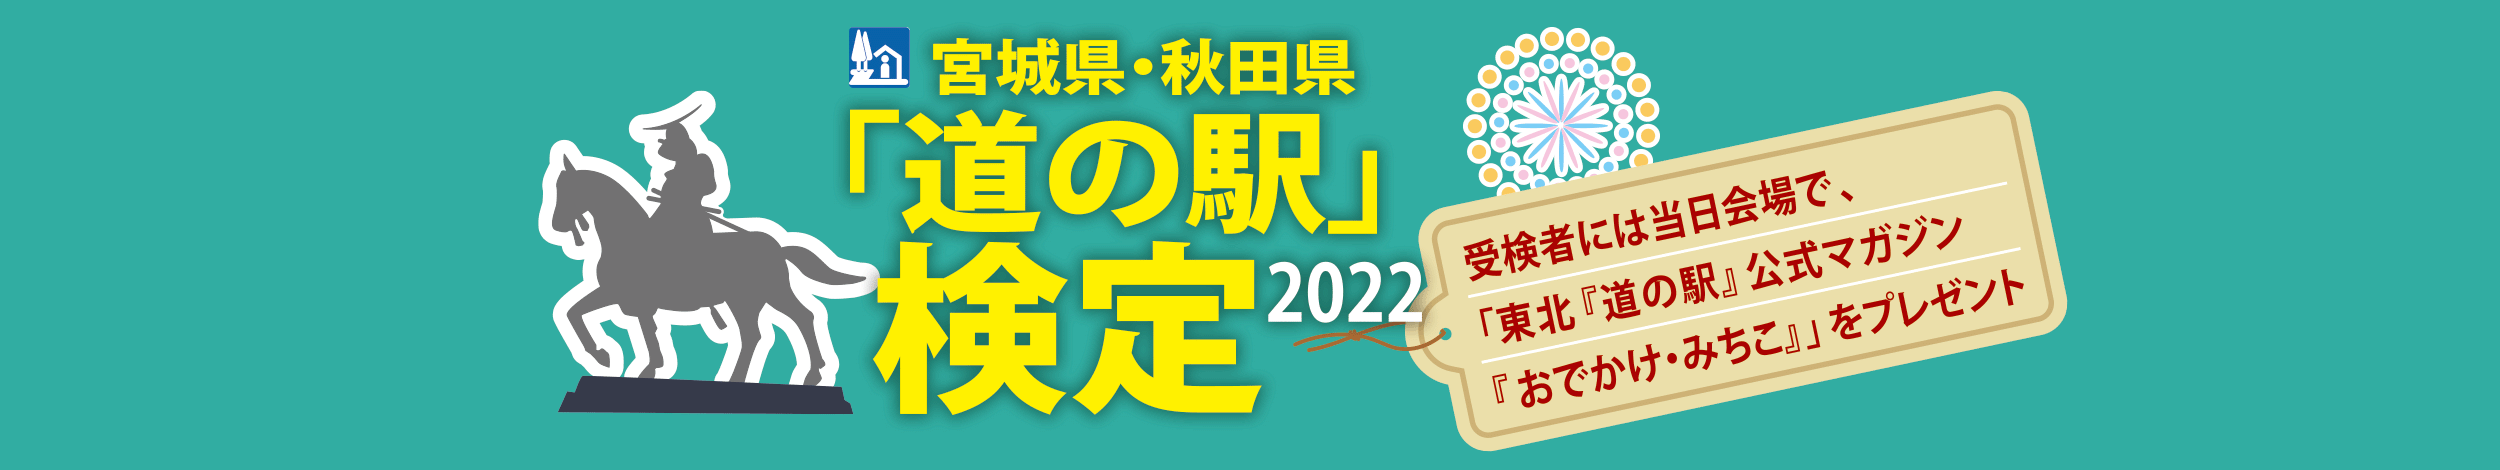 宮城県・秋田県「道の駅」検定2022